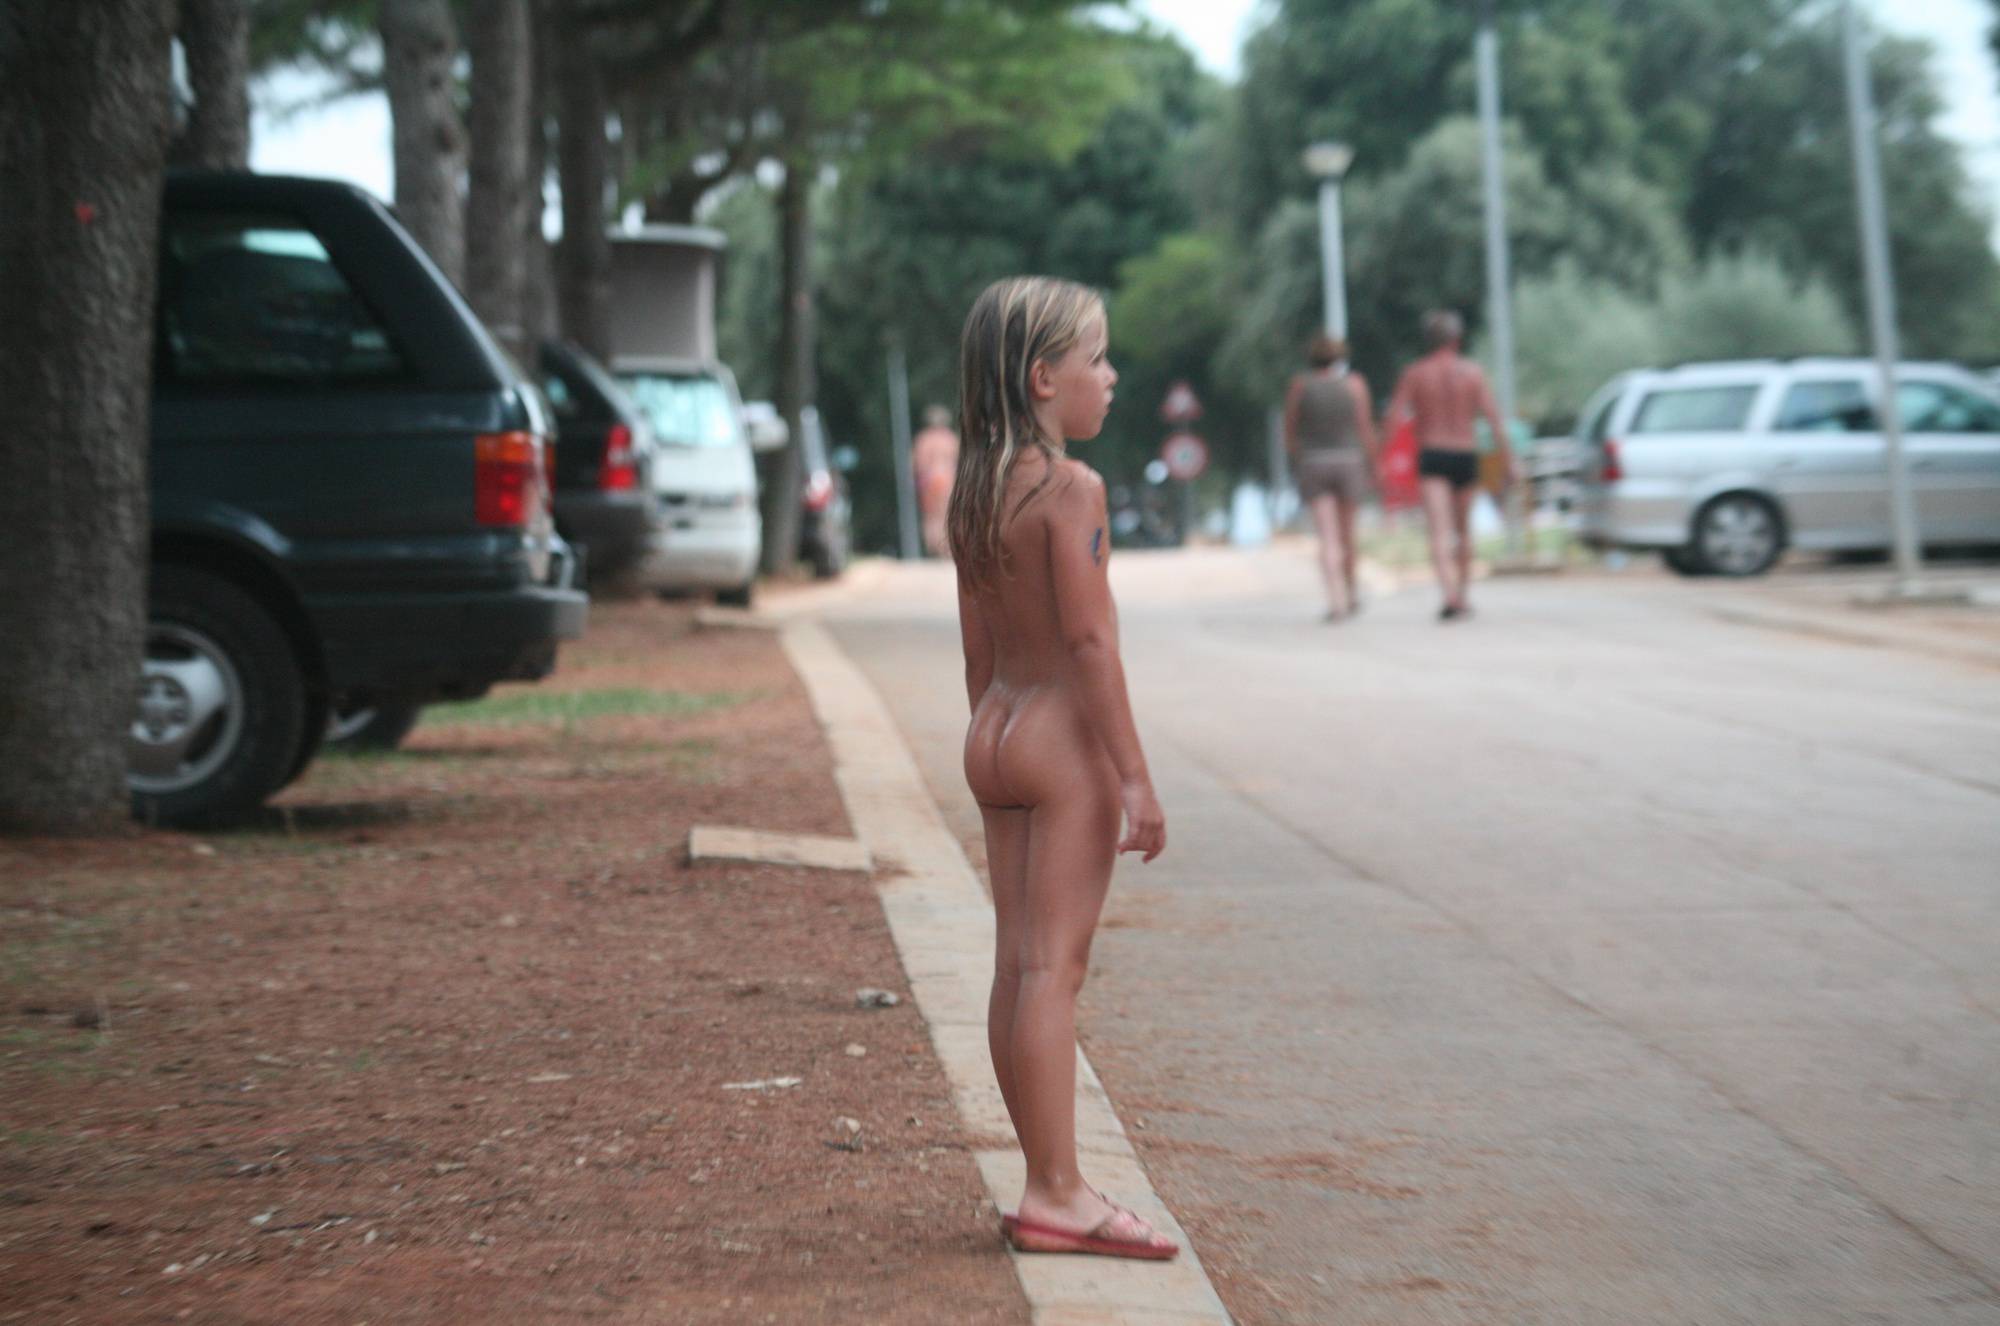 Naturist Child on Sidewalk - 1